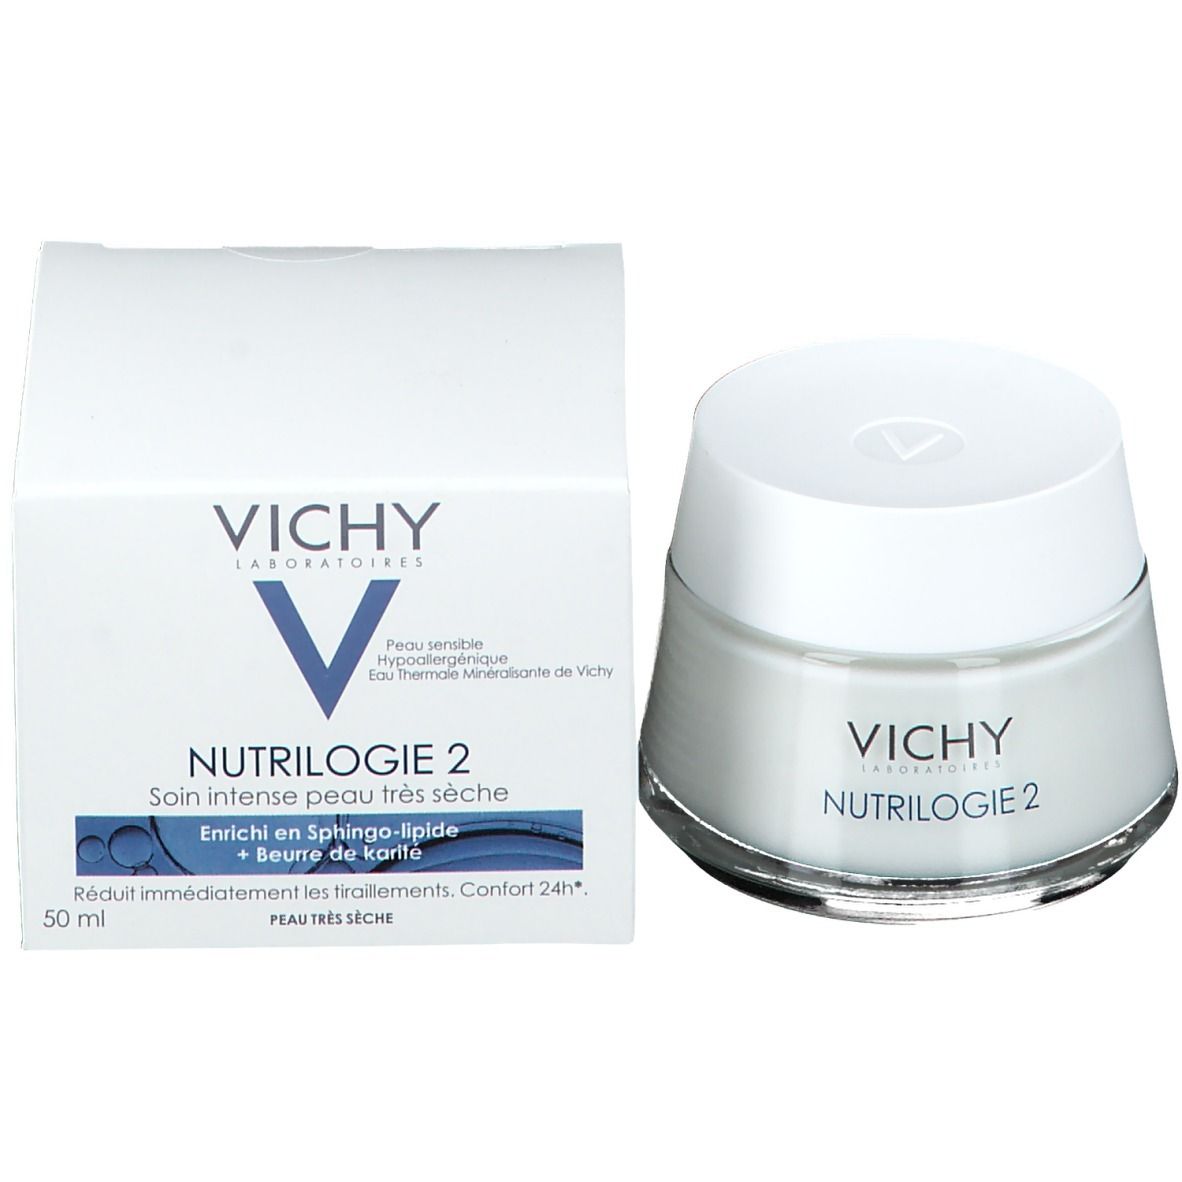 Vichy Nutrilogie 2 Creme für sehr trockene Haut